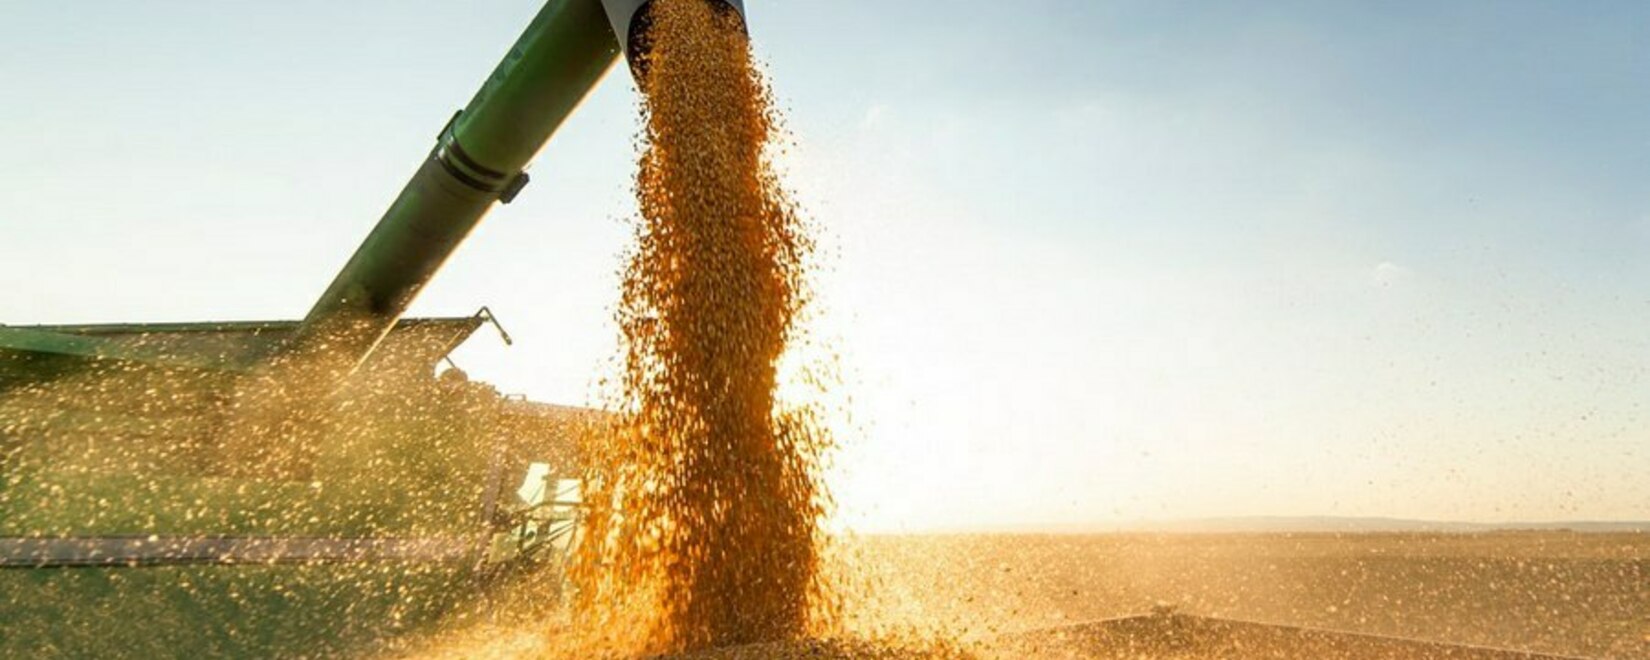 Более ста миллионов долларов: Приамурье увеличило в несколько раз экспорт зерна и сои